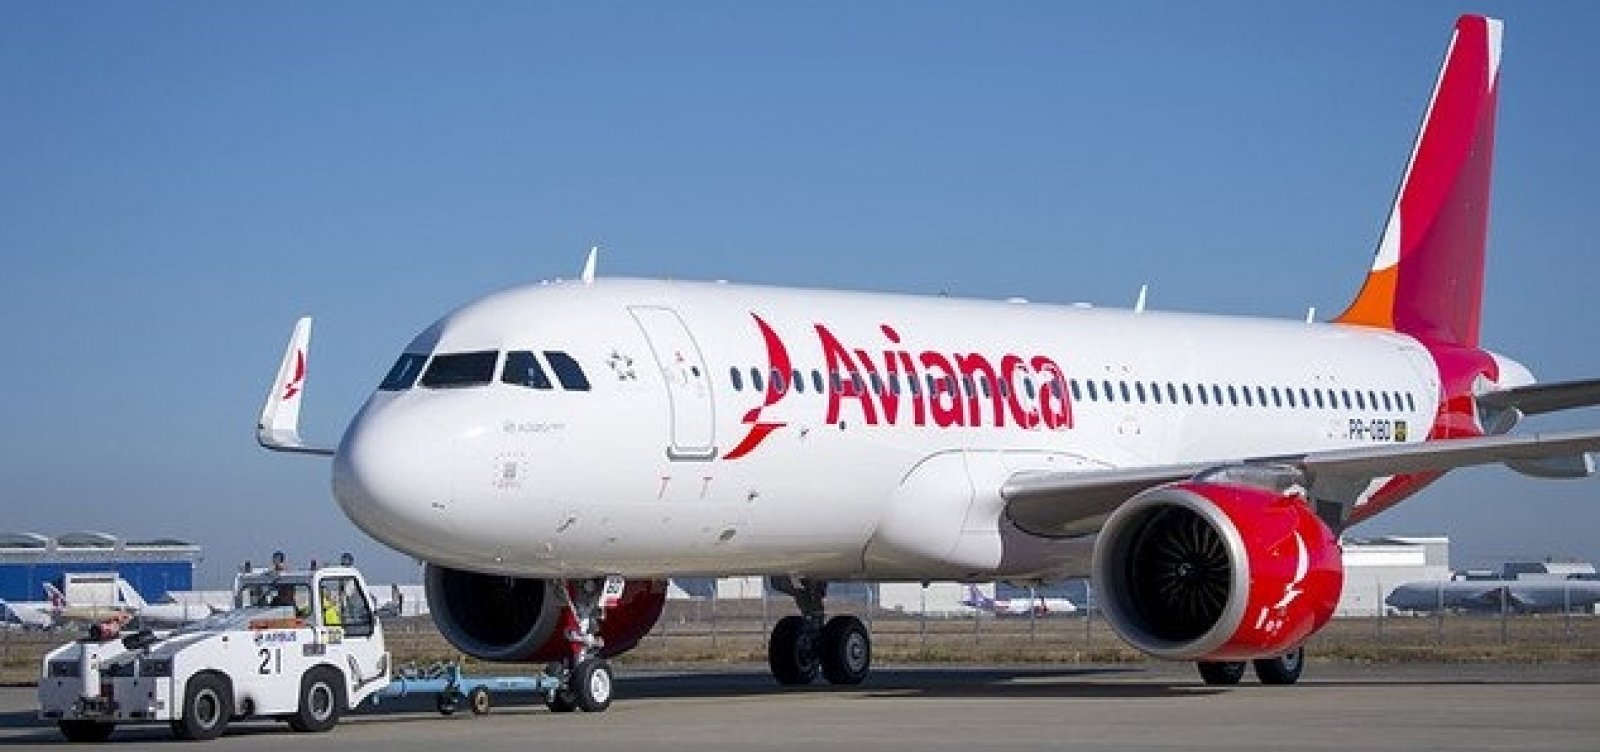 Quatro companhias aéreas disputam slots da Avianca em Congonhas